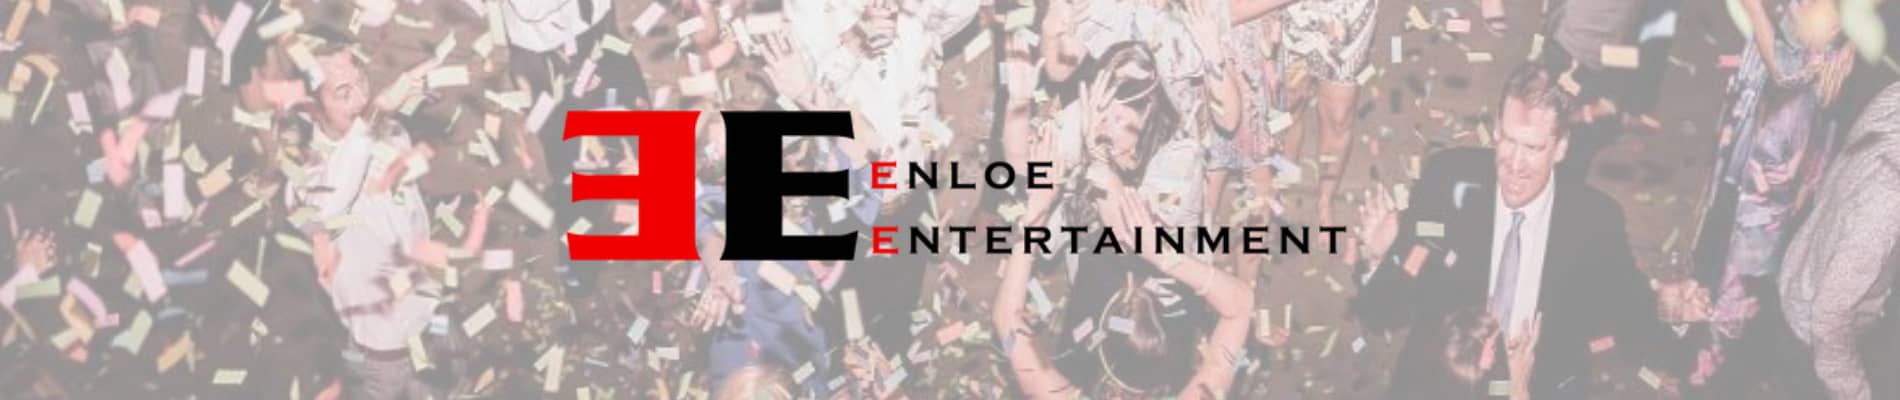 DJ Category Vendor Enloe Entertainment